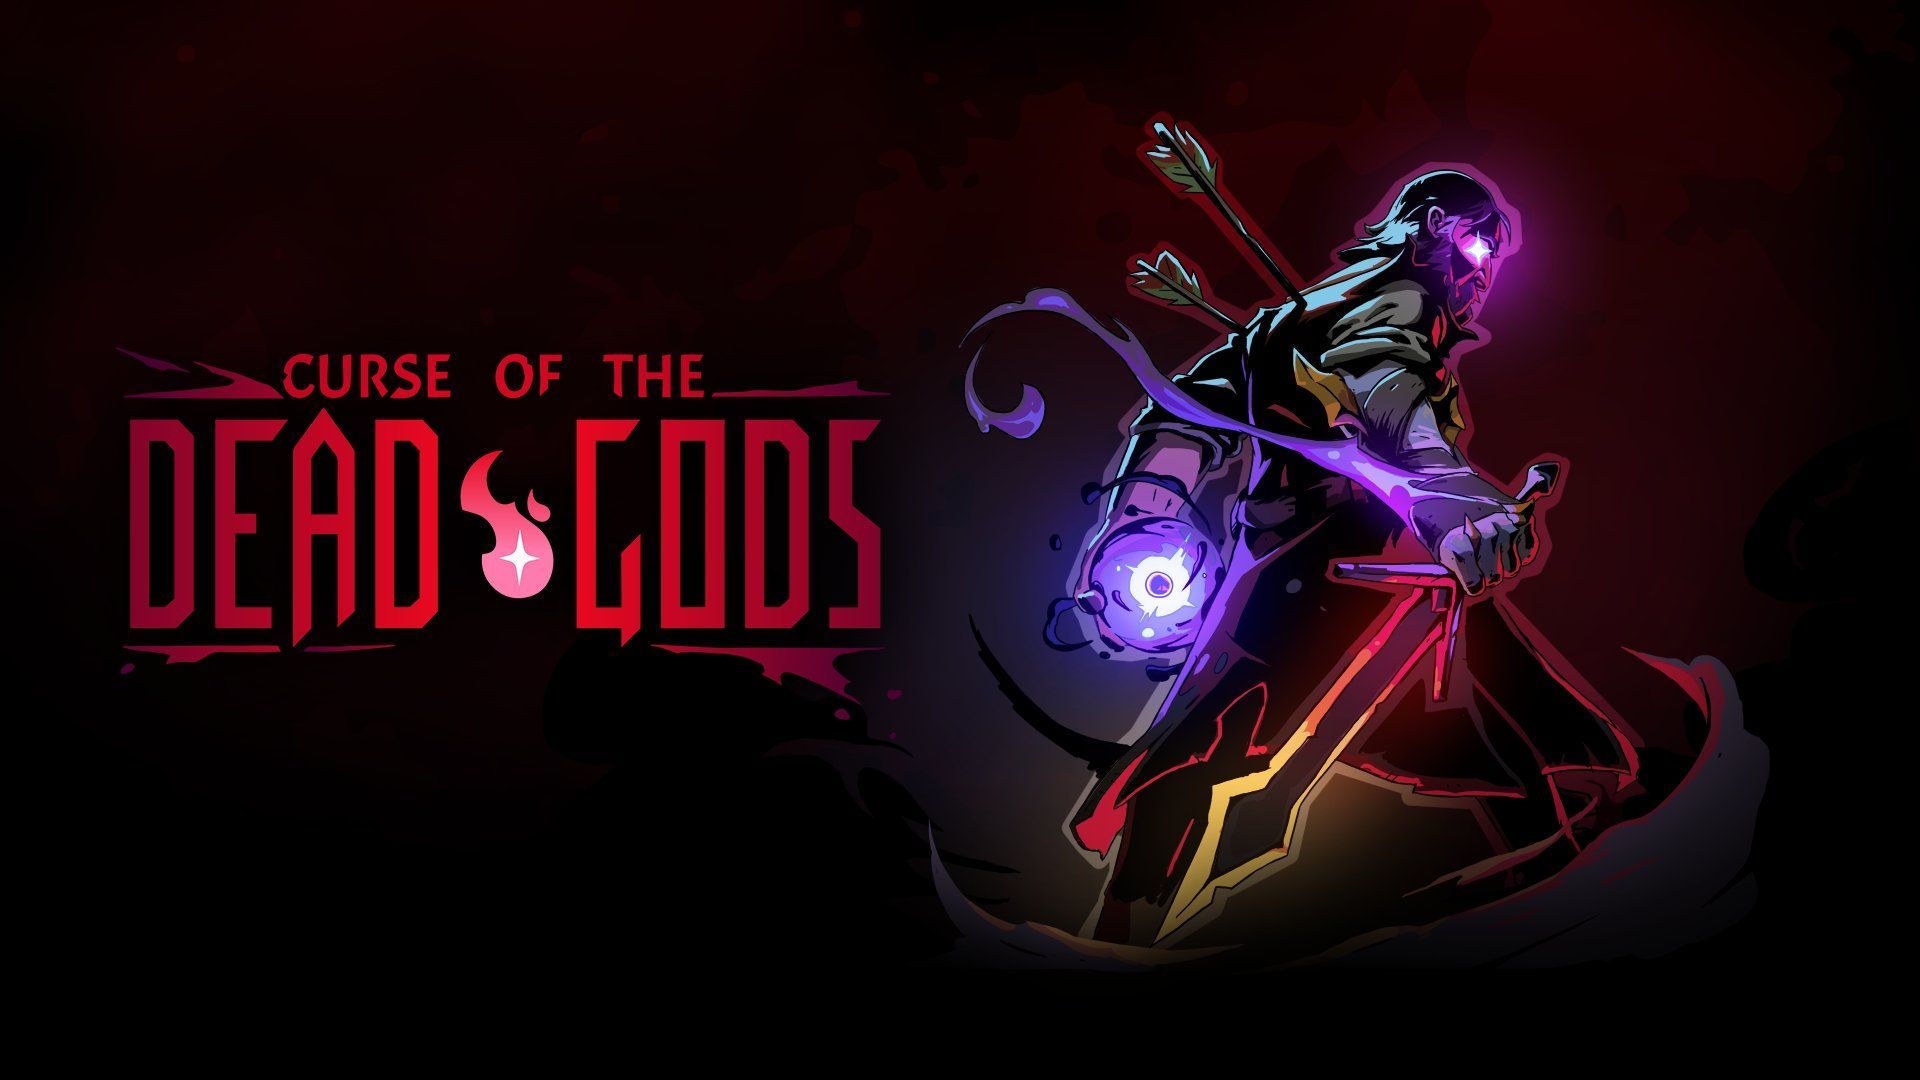 Curse of The Dead Gods annonce un crossover avec Dead Cells